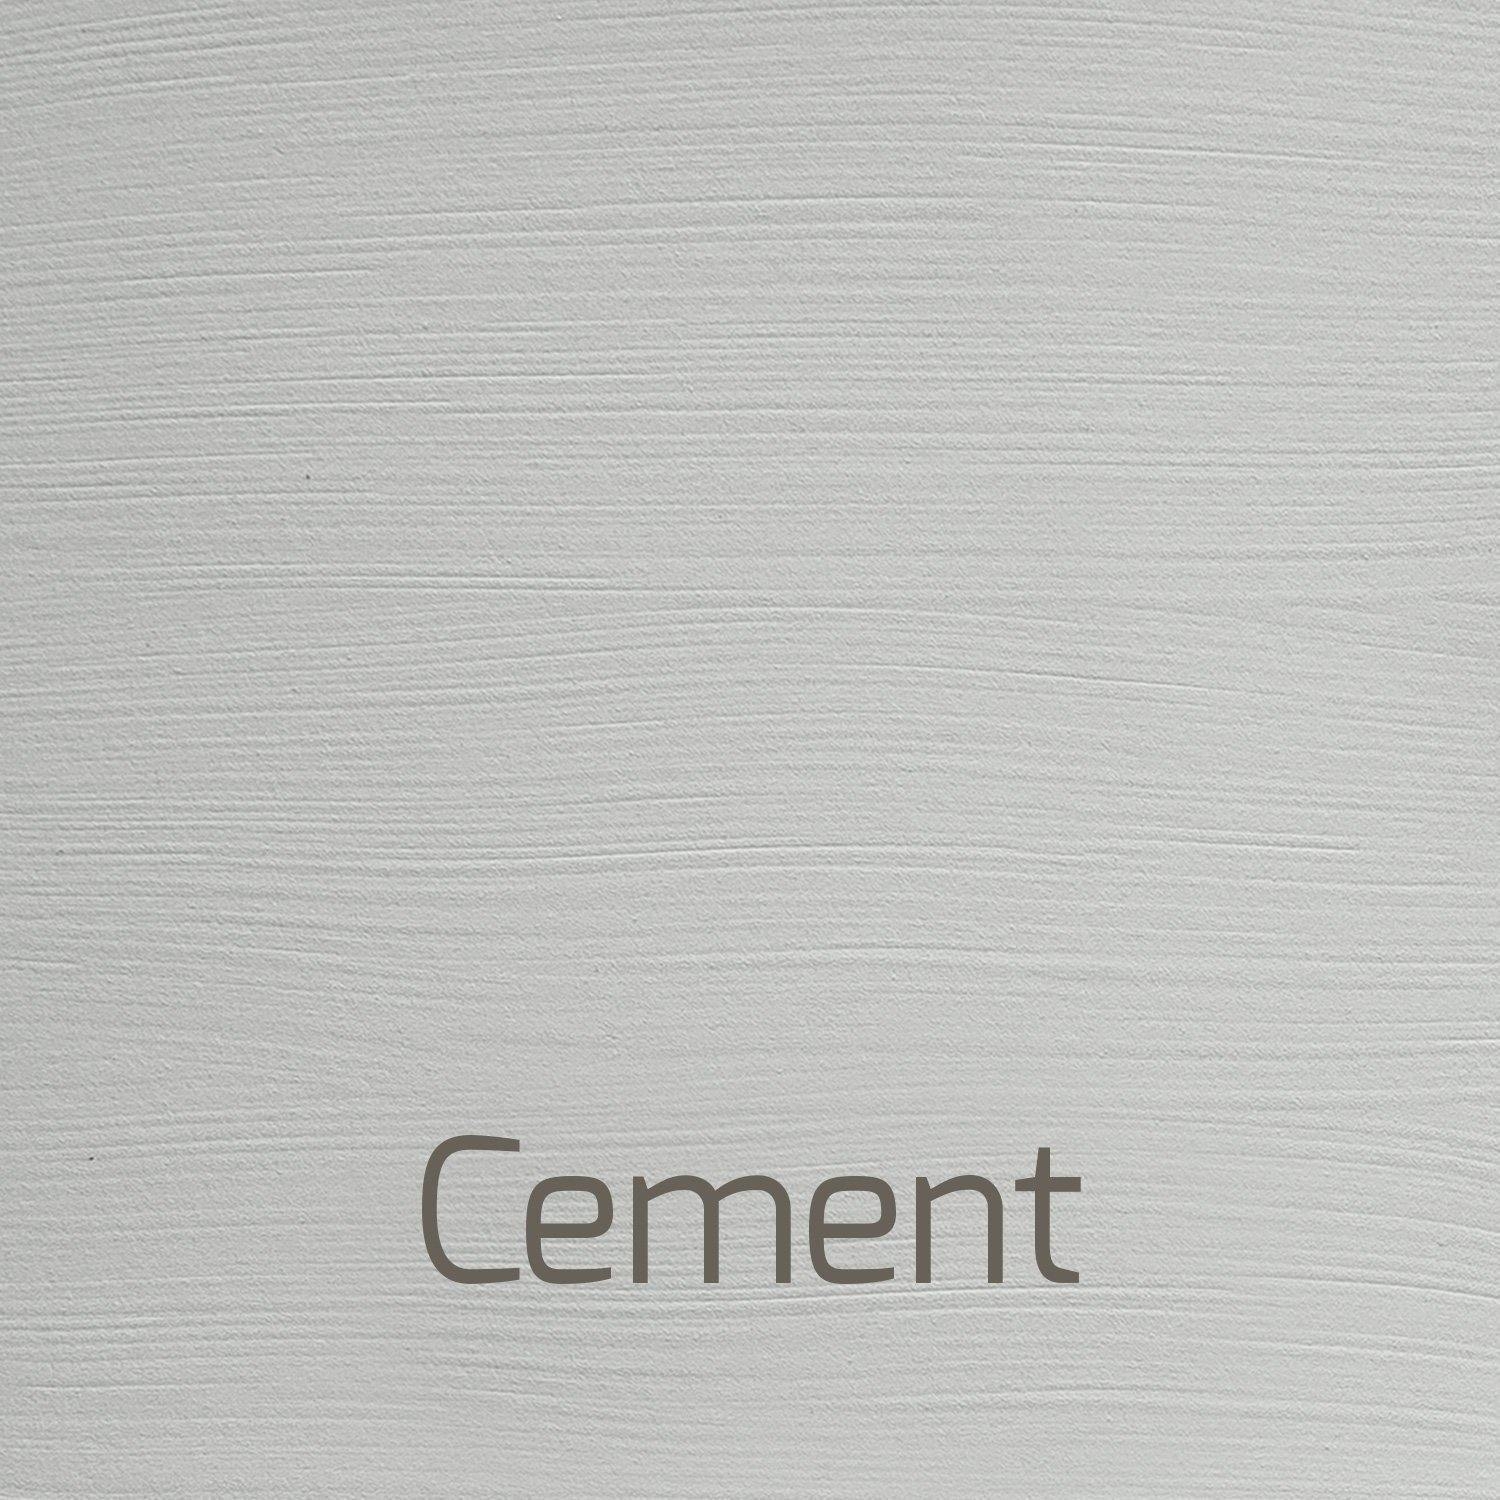 Velvet – Cement 2.5 ltr Paint – Autentico